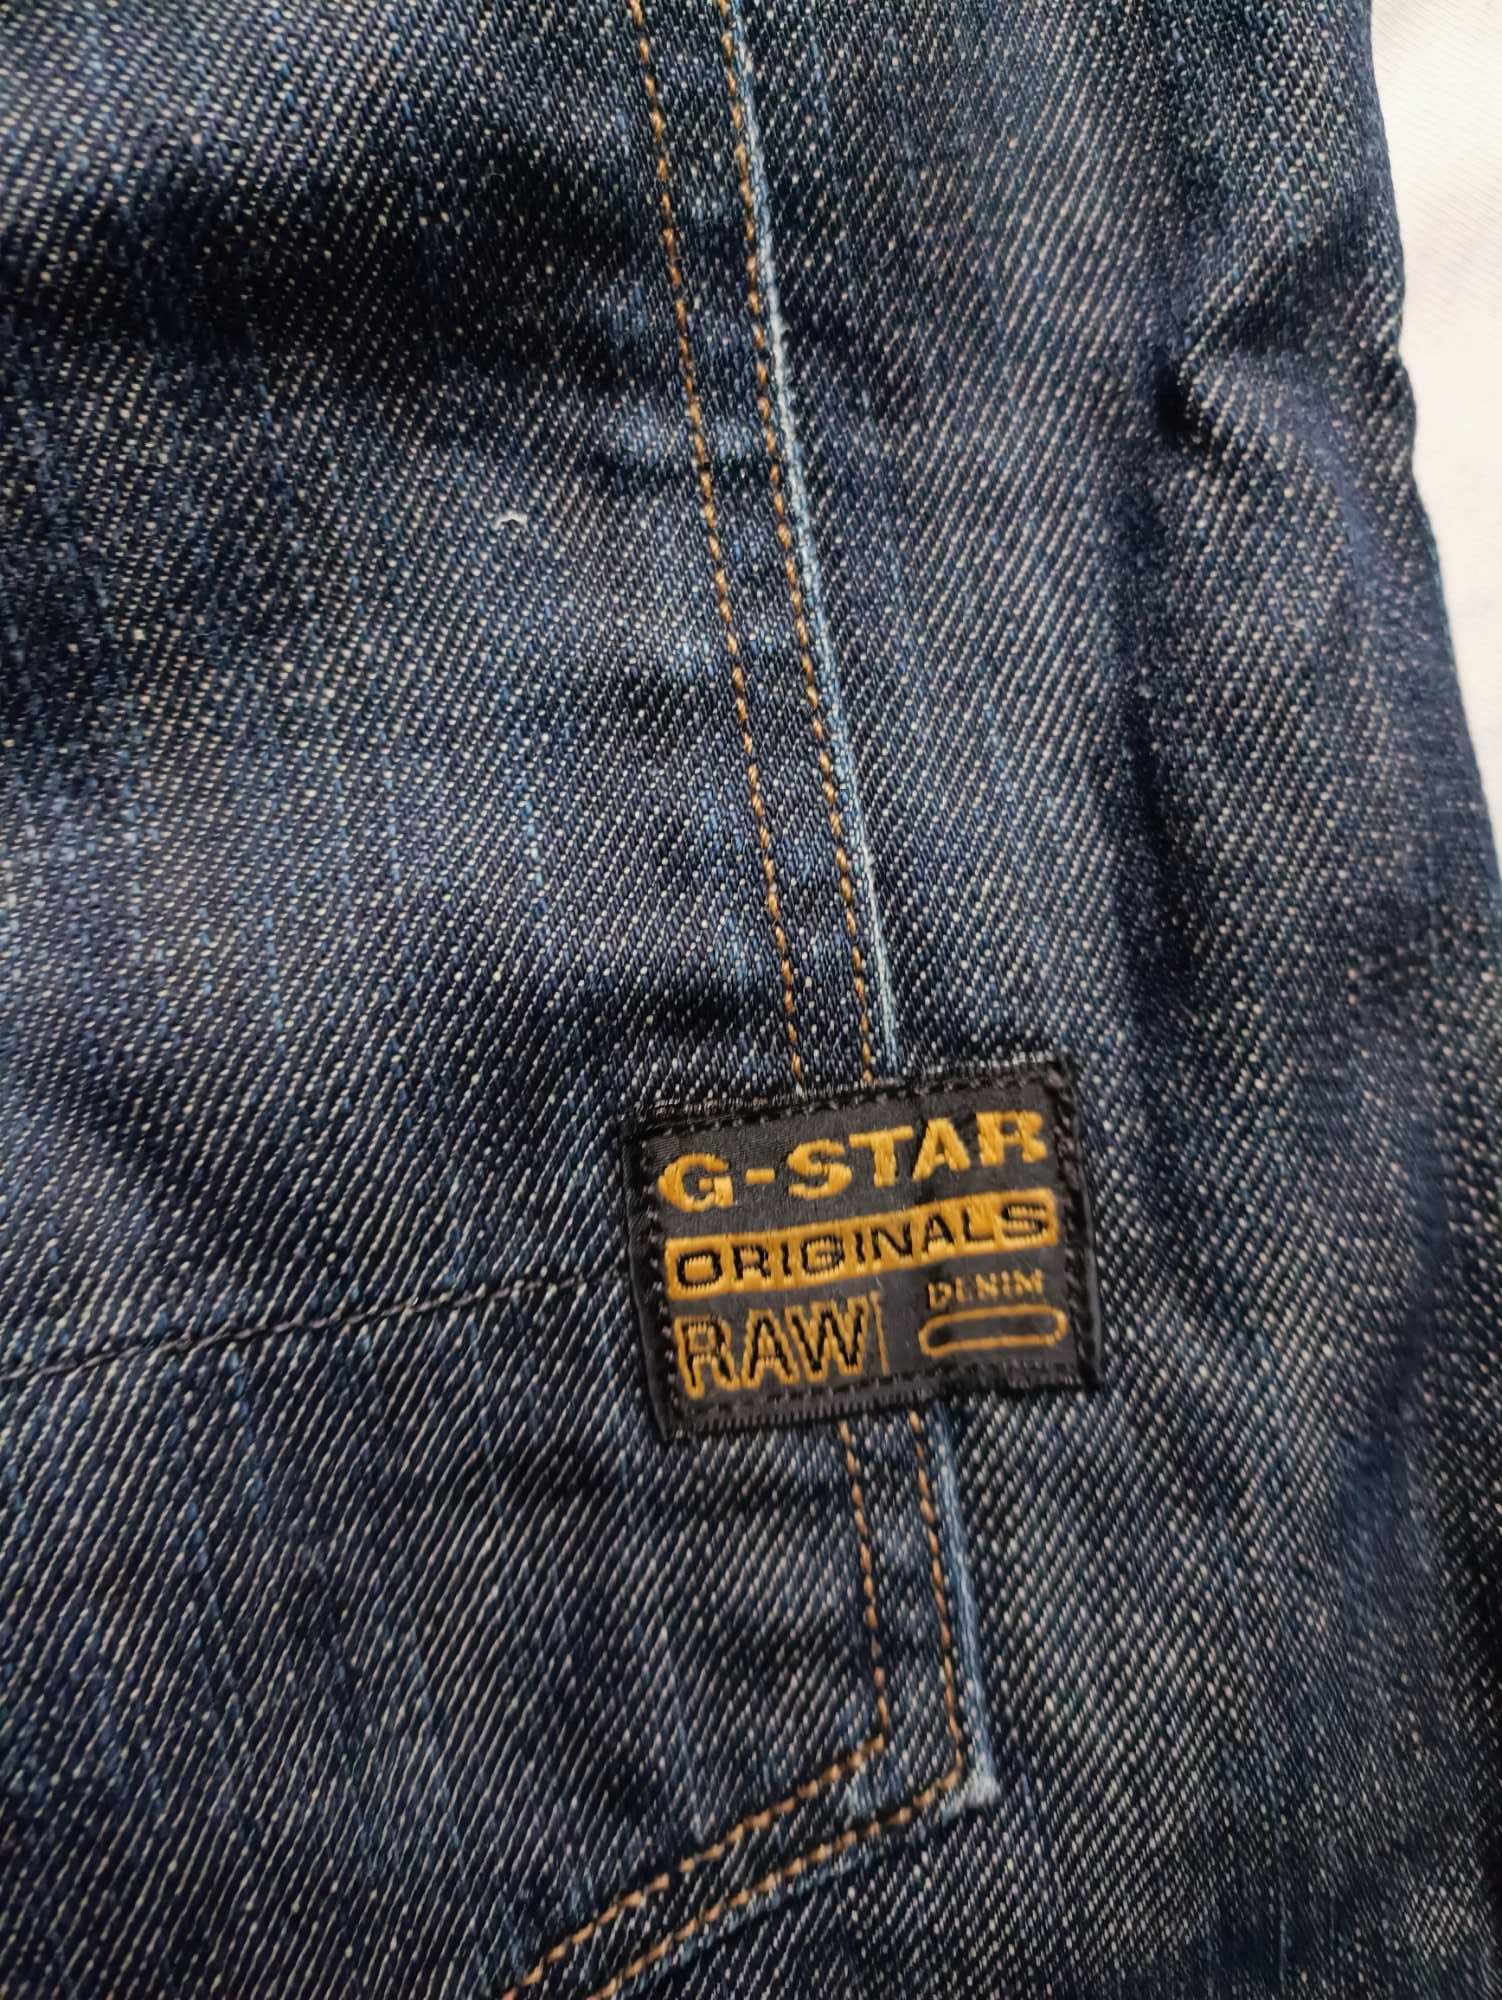 Синие классические джинсы оригиналы GStar